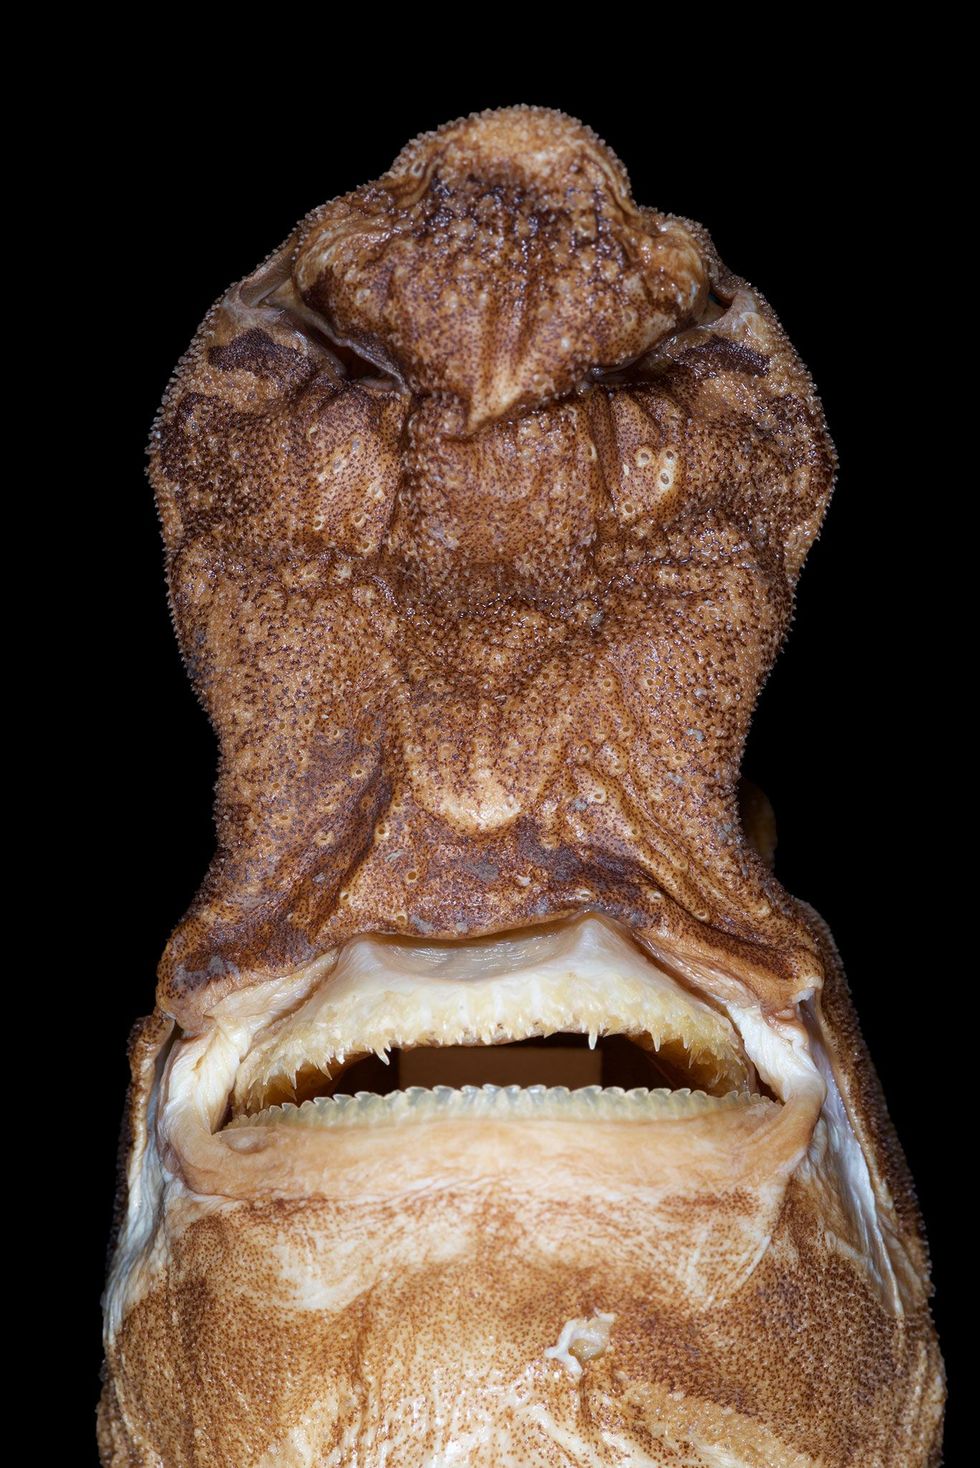 De kop van Etmopterus lailae heeft een vreemde vorm en zijn snuit is ongebruikelijk dik In de snuit bevinden zich de neusgaten en het reukorgaan Deze haaien leven in de diepzee waar bijna geen zonlicht doordringt dus hebben ze een stevige neus nodig om voedsel op te sporen